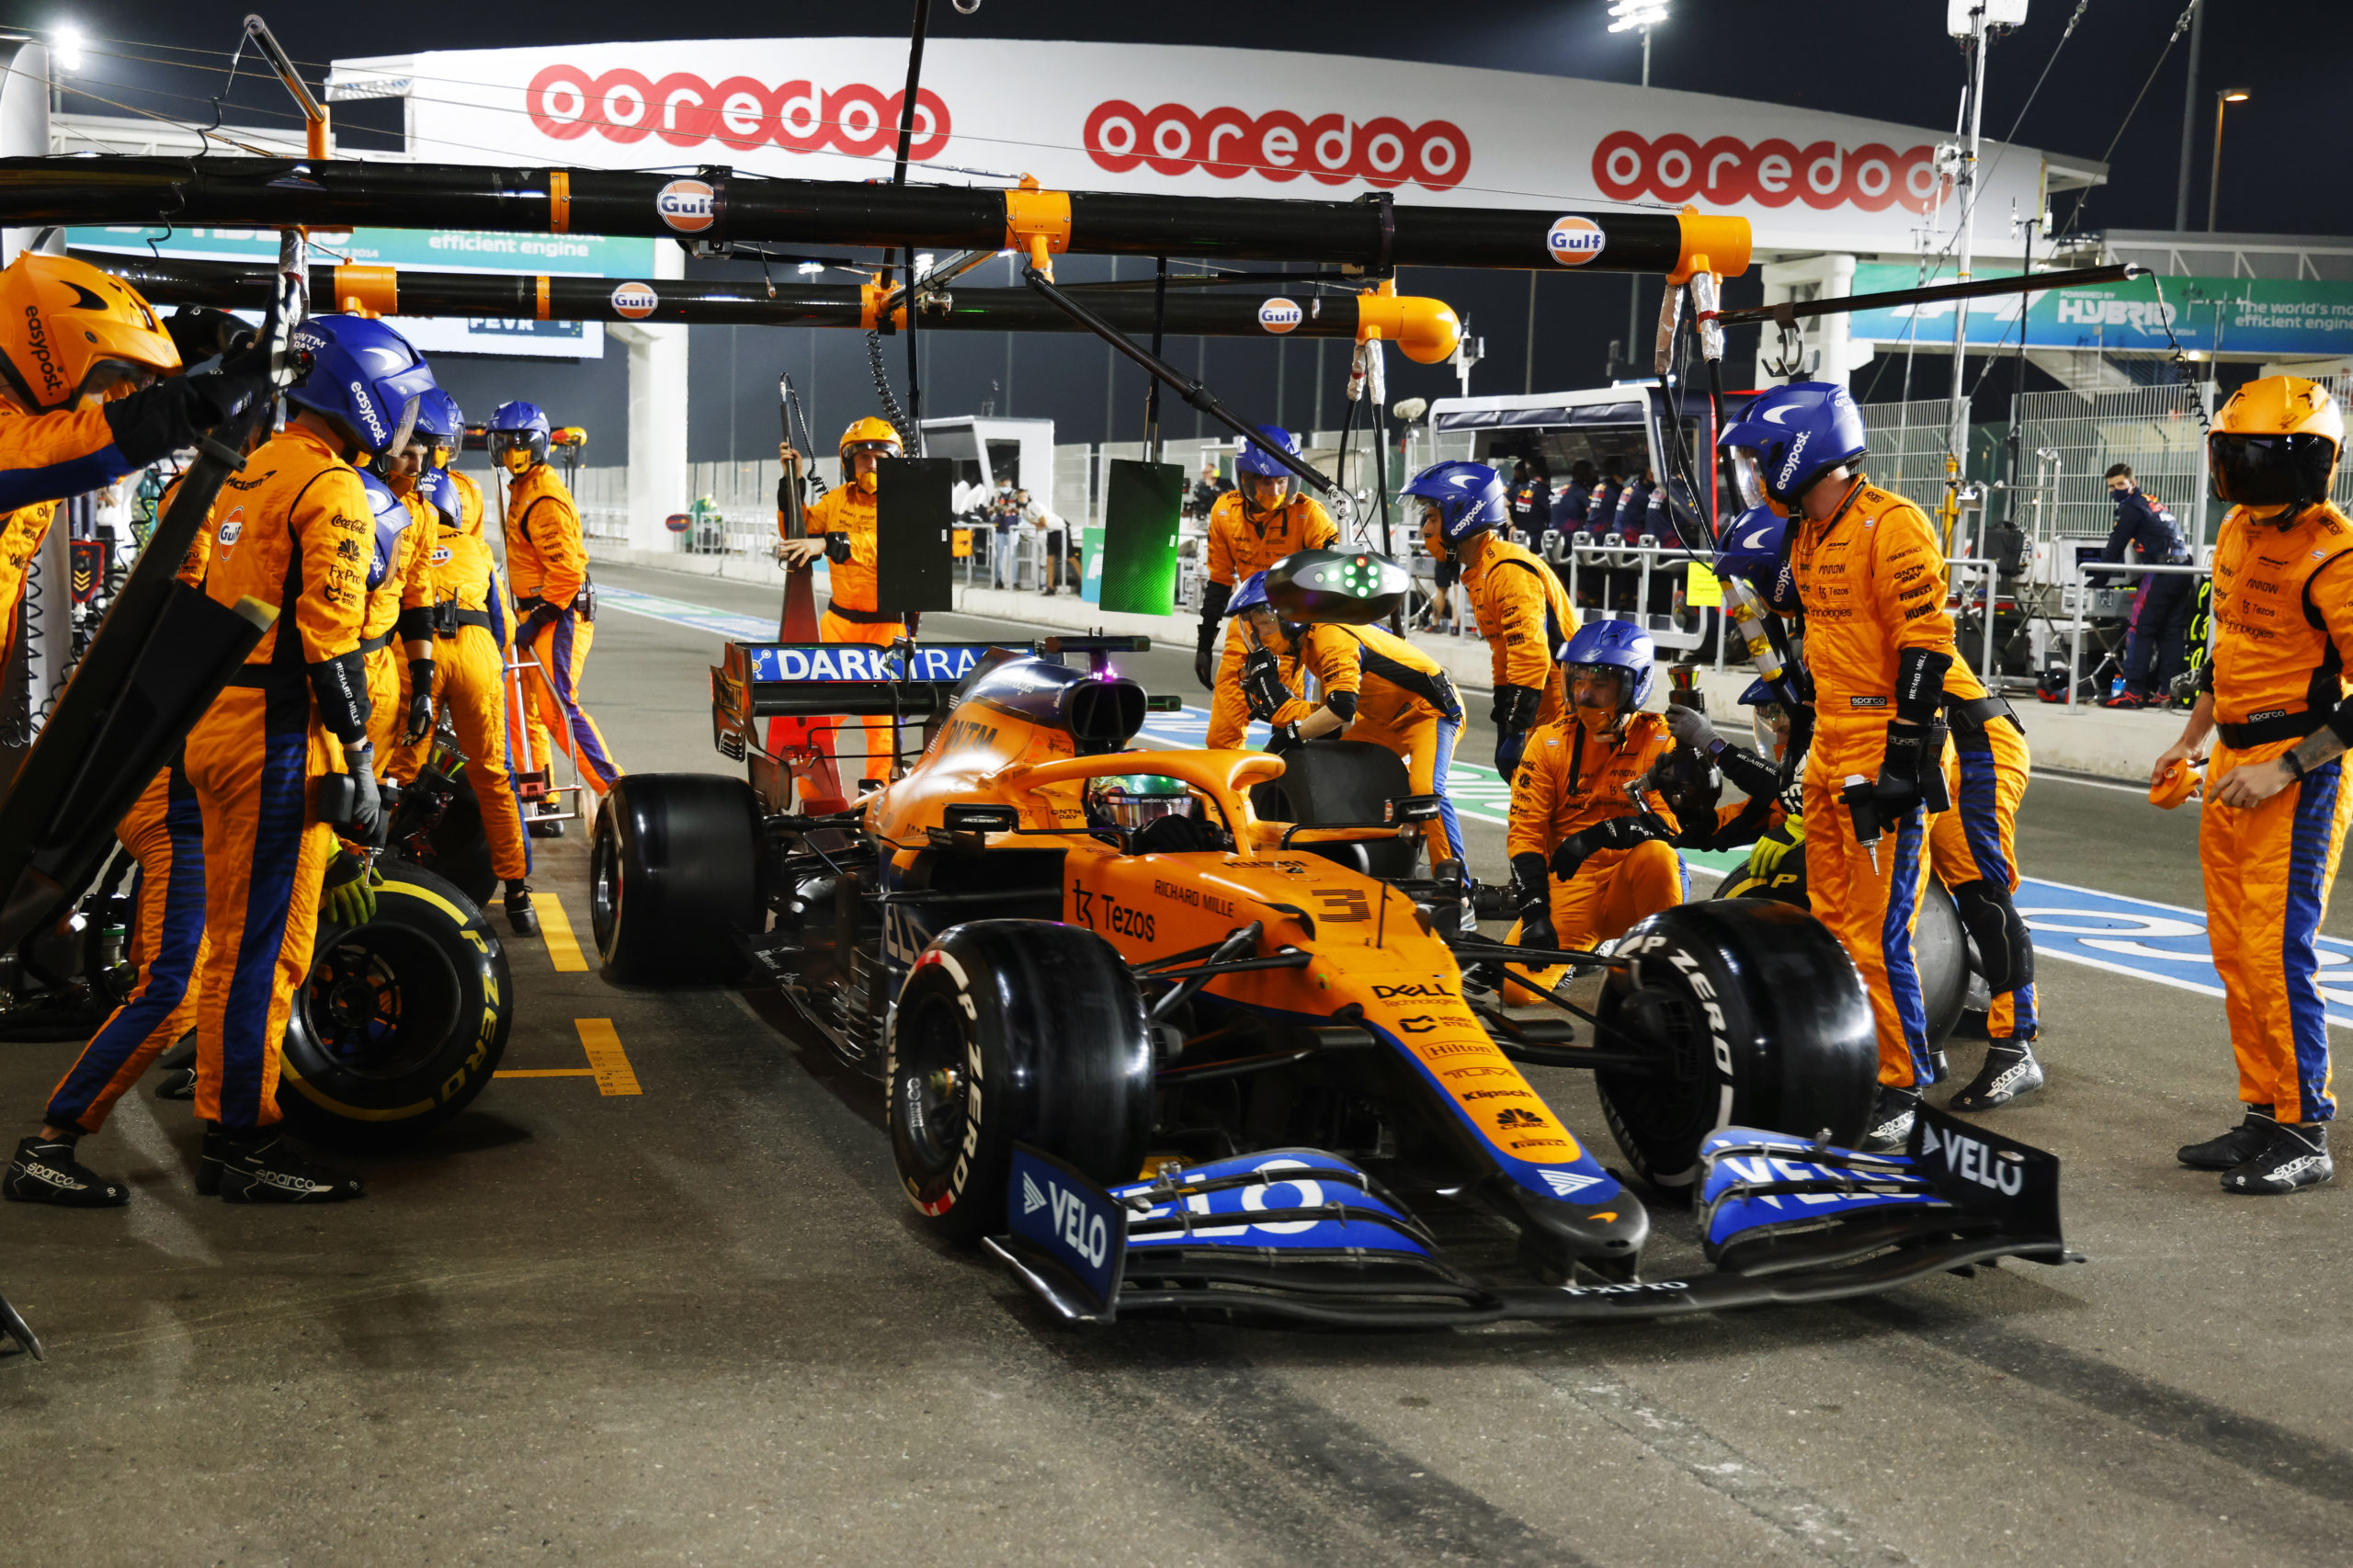 McLaren quiere recuperarse tras cuatro puntos en tres carreras: “Seguimos luchando”